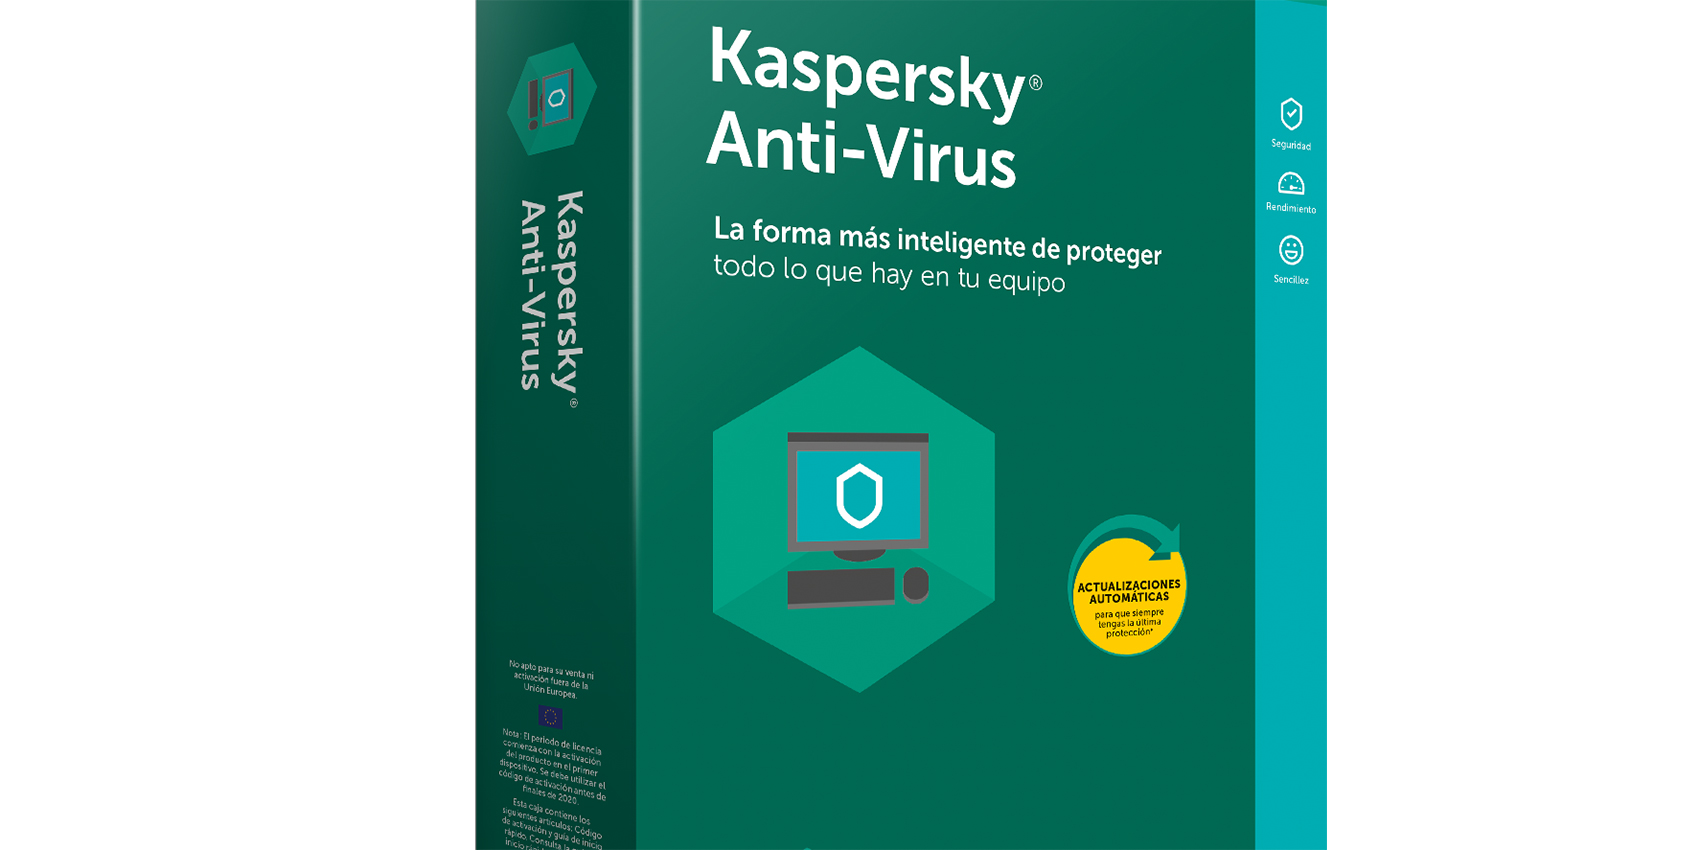 Las soluciones anti-virus de Kaspersky protege todo el contenido digital que contienen nuestros ordenadores de accesos indeseados...